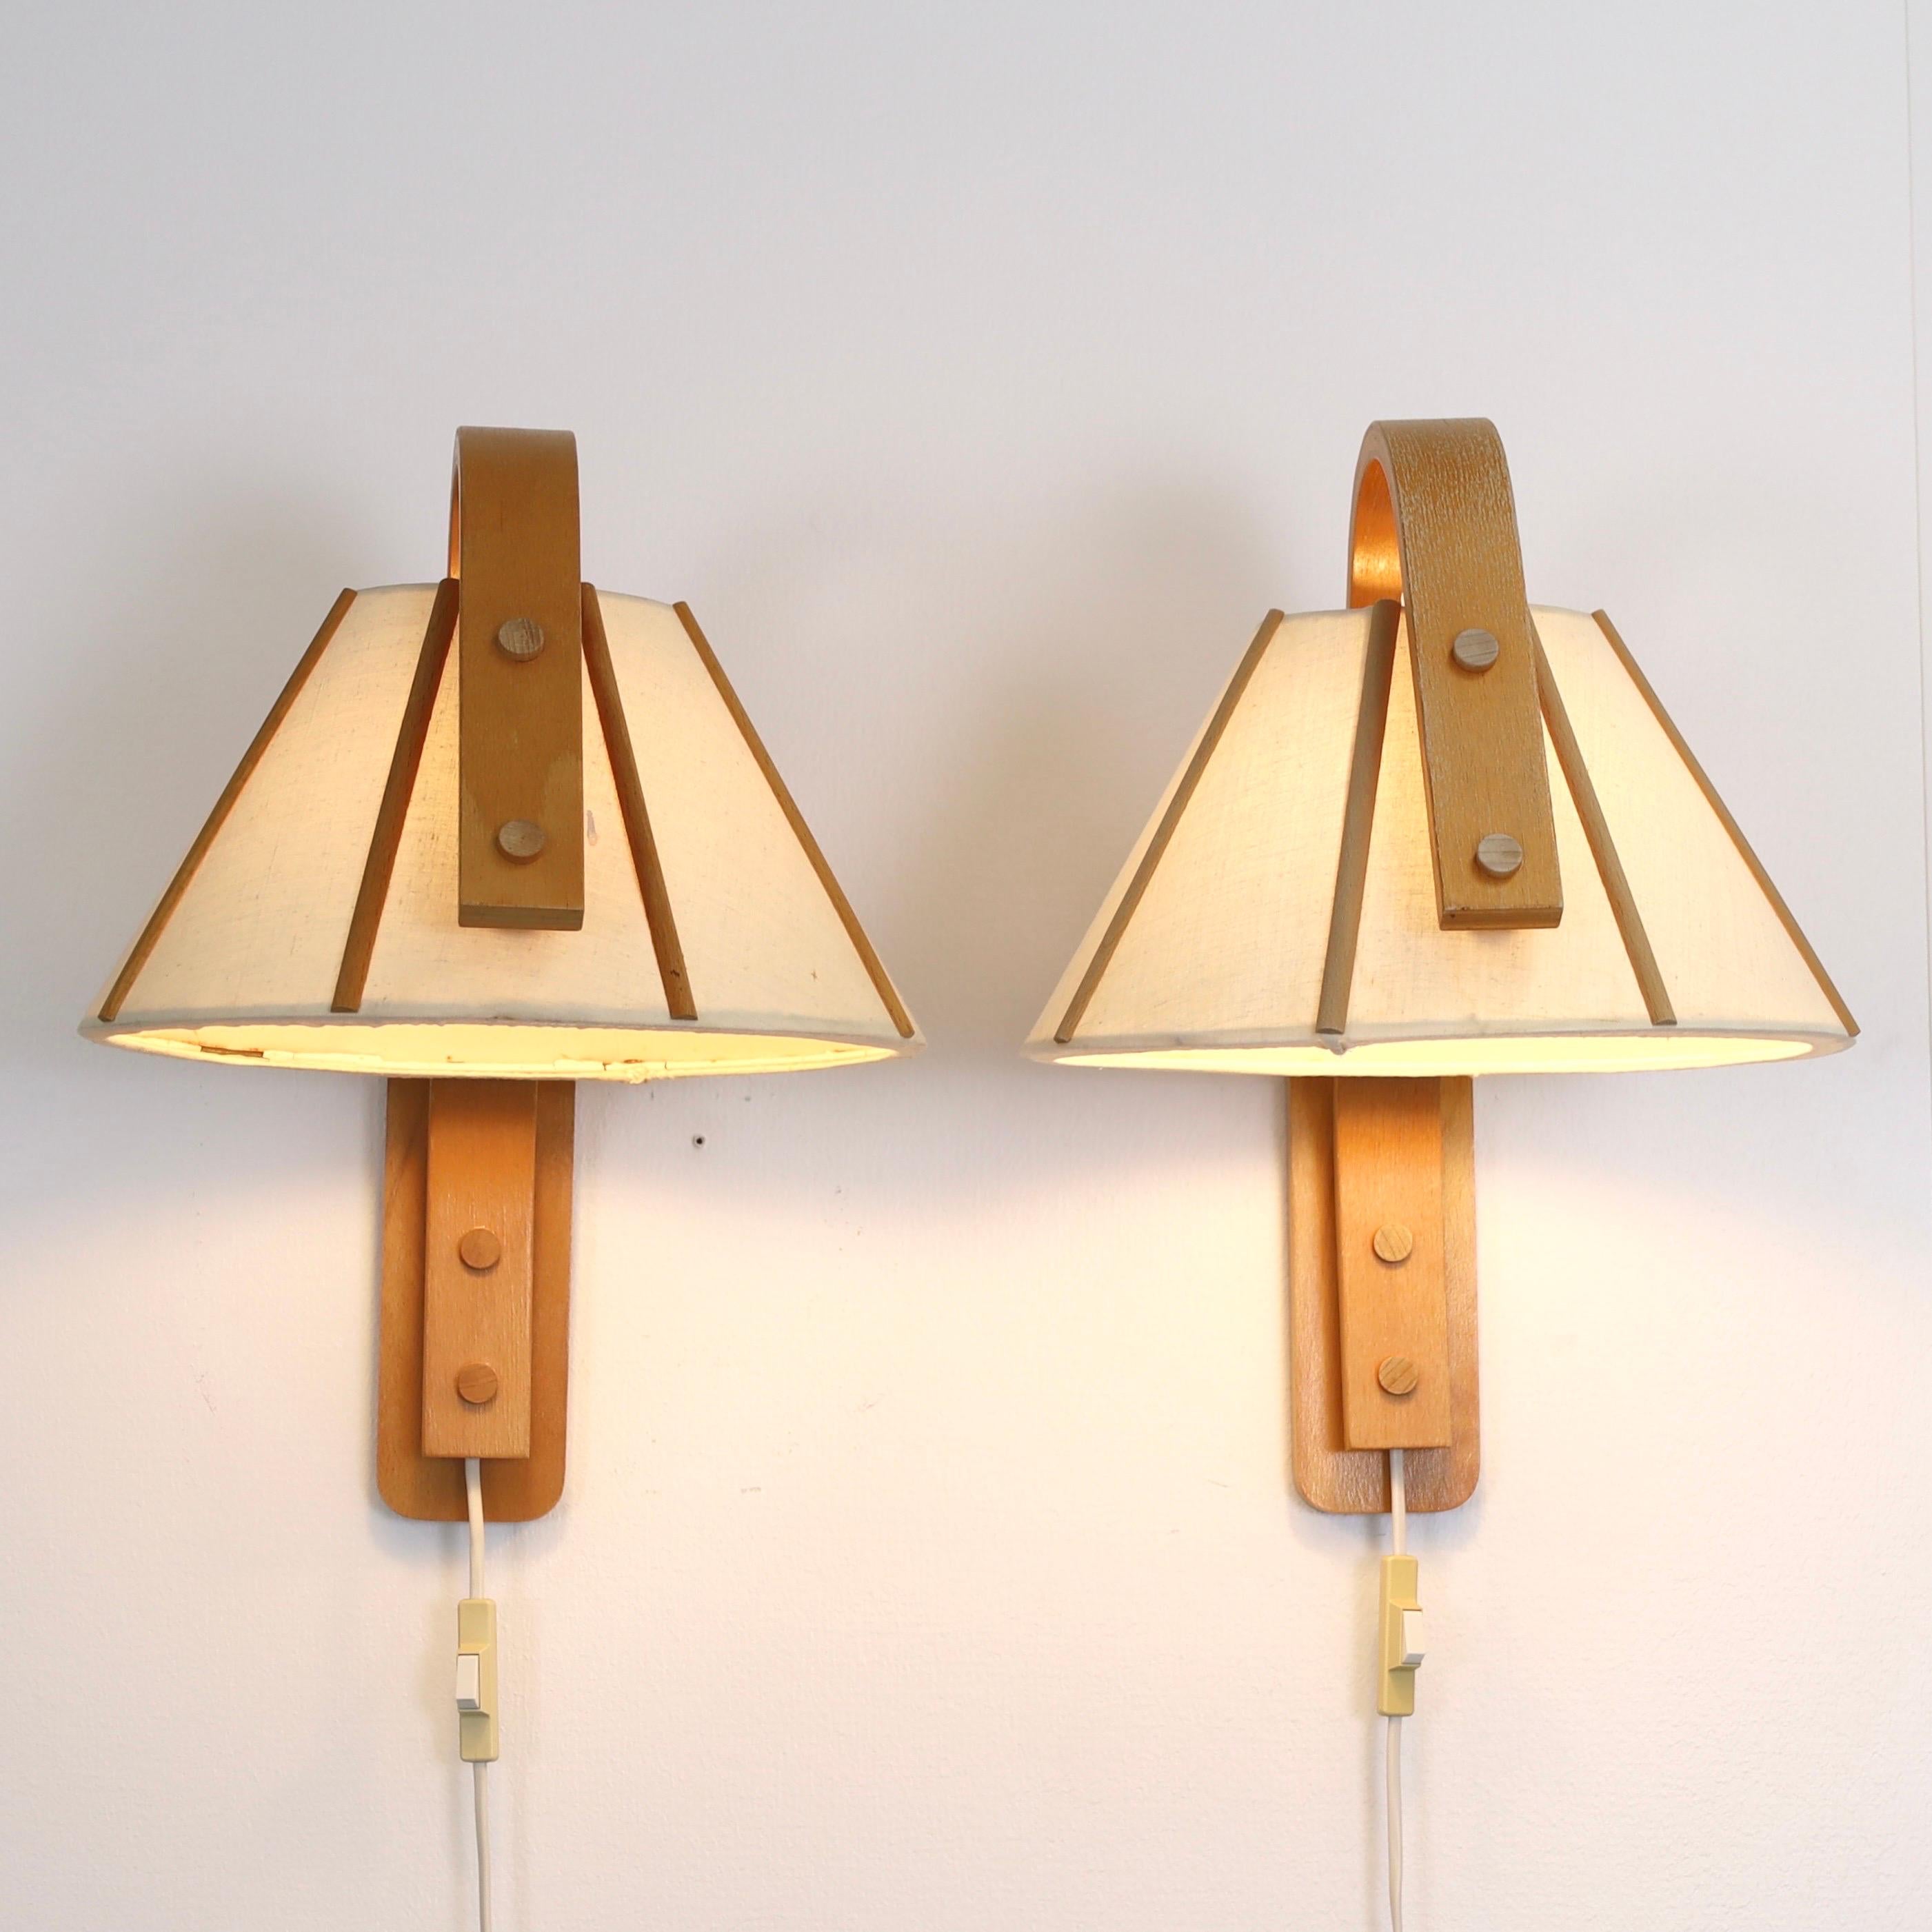 Set of 4 Scandinavian Modern Beech wood wall lamps by Jan Wickelgren, 1970s In Good Condition For Sale In Værløse, DK